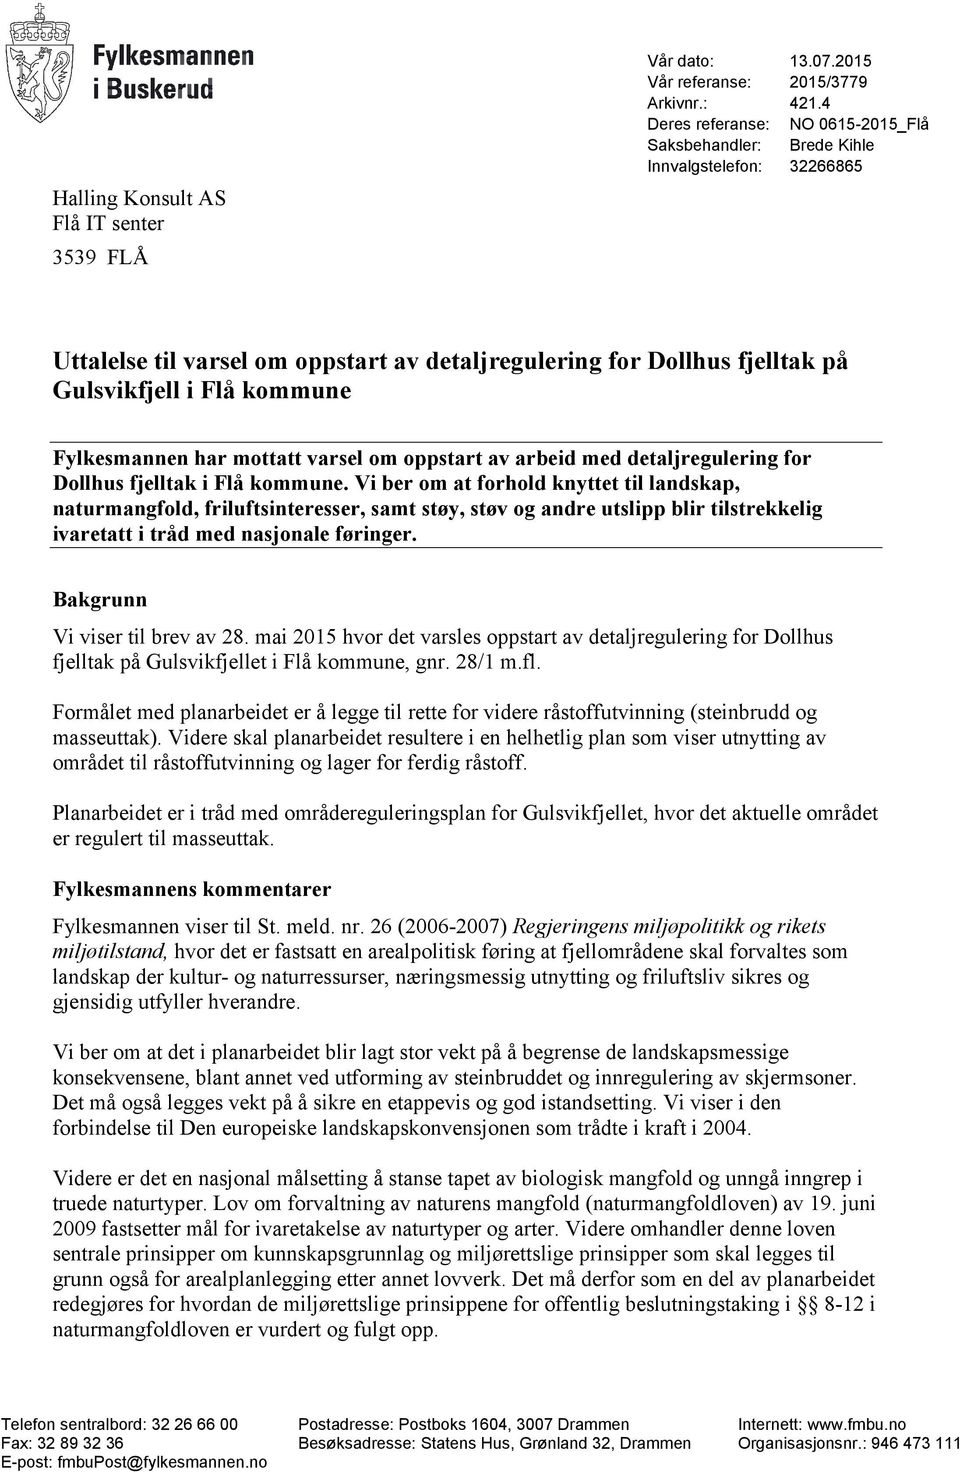 Fylkesmannen har mottatt varsel om oppstart av arbeid med detaljregulering for Dollhus fjelltak i Flå kommune.